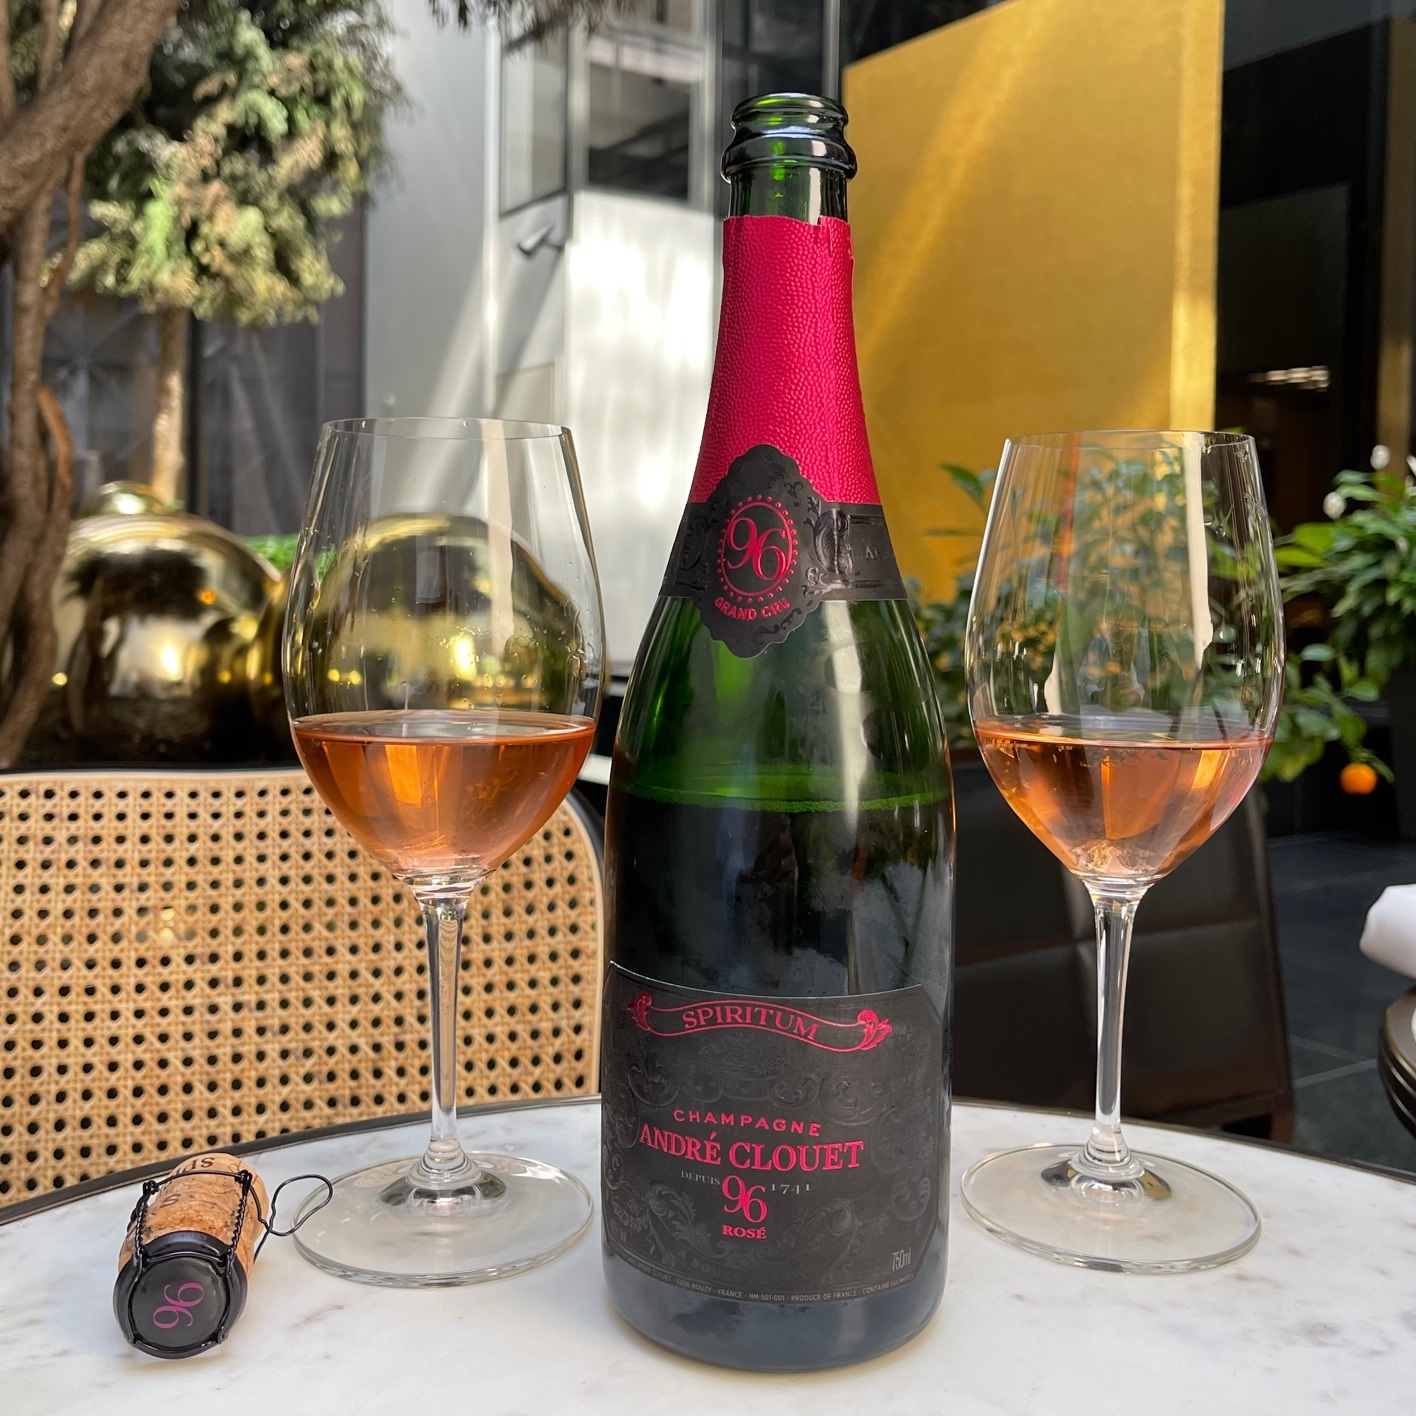 André Clouet Spiritum 96 uus Rosé Champagne